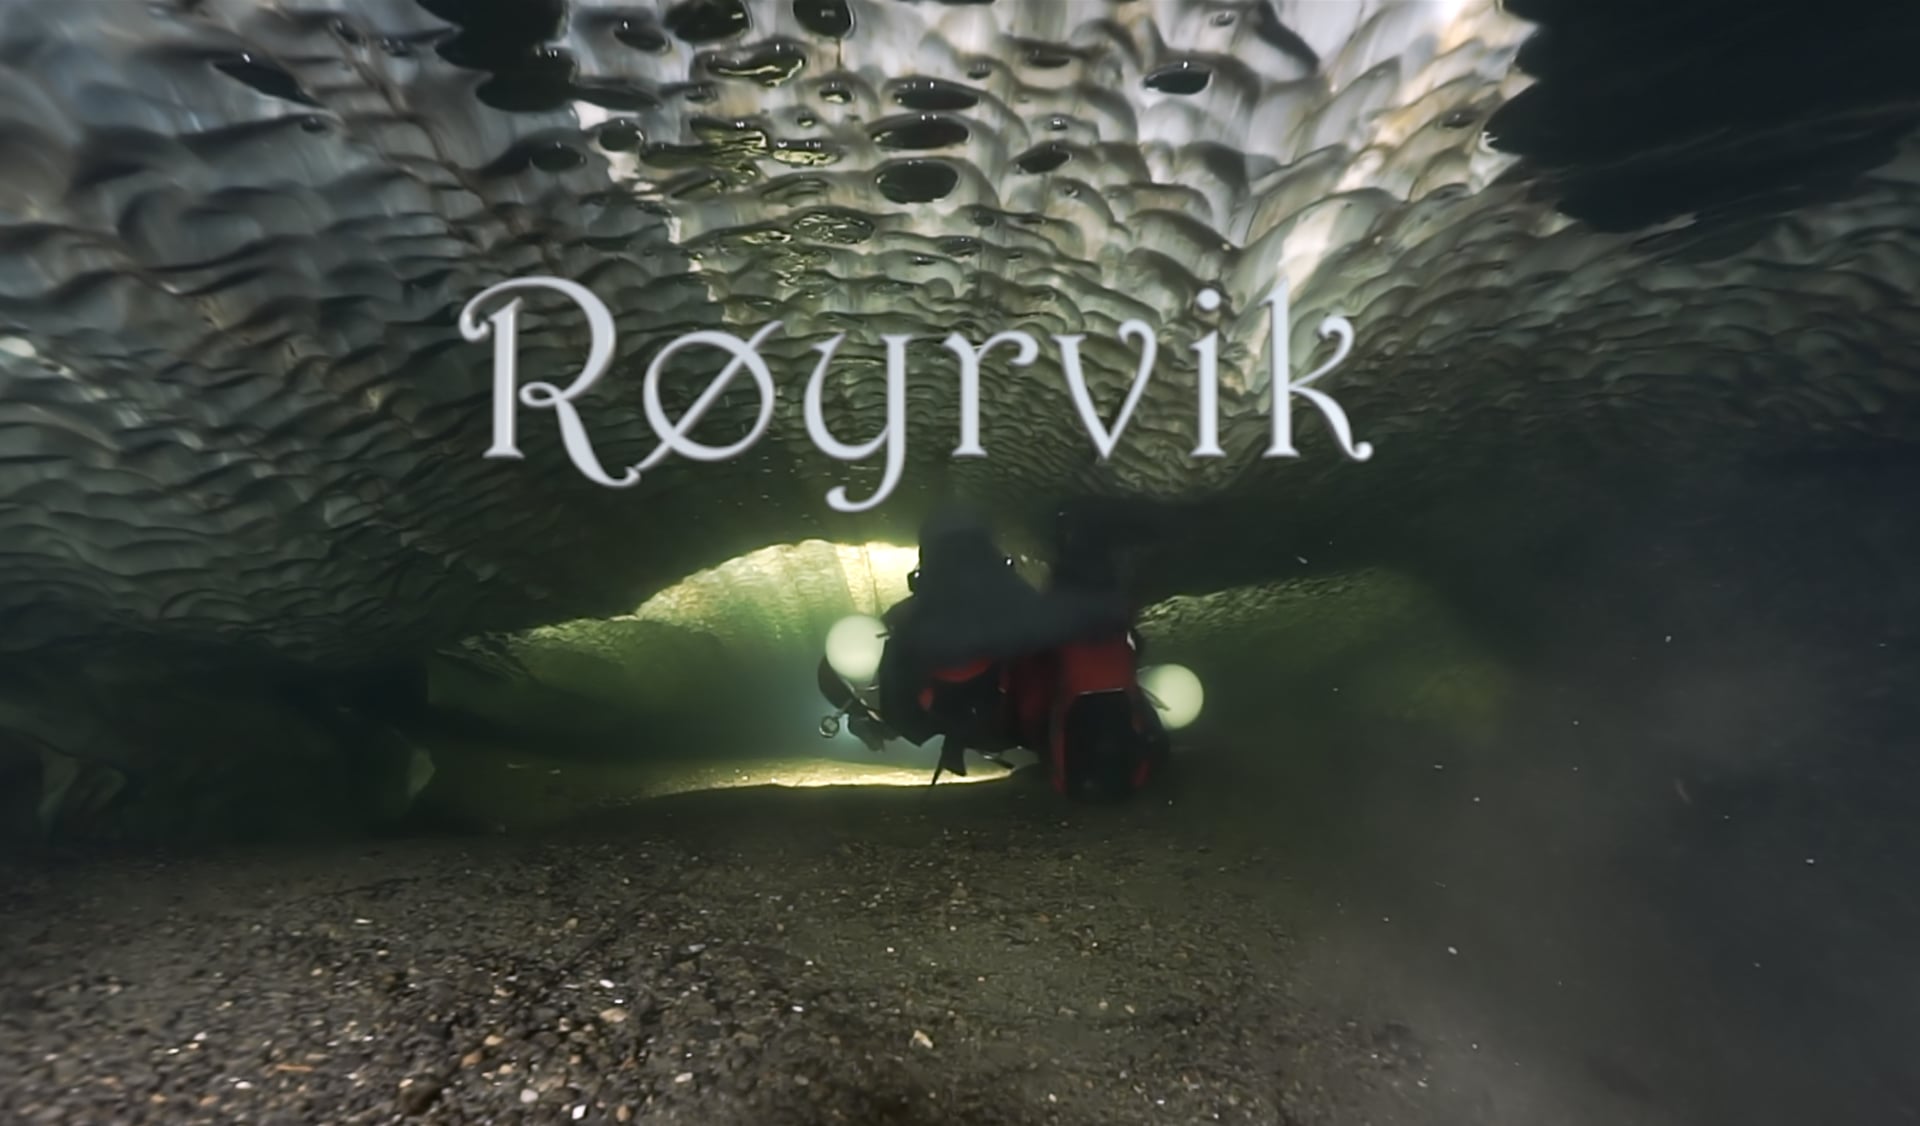 Røyrvik – Wikipedia